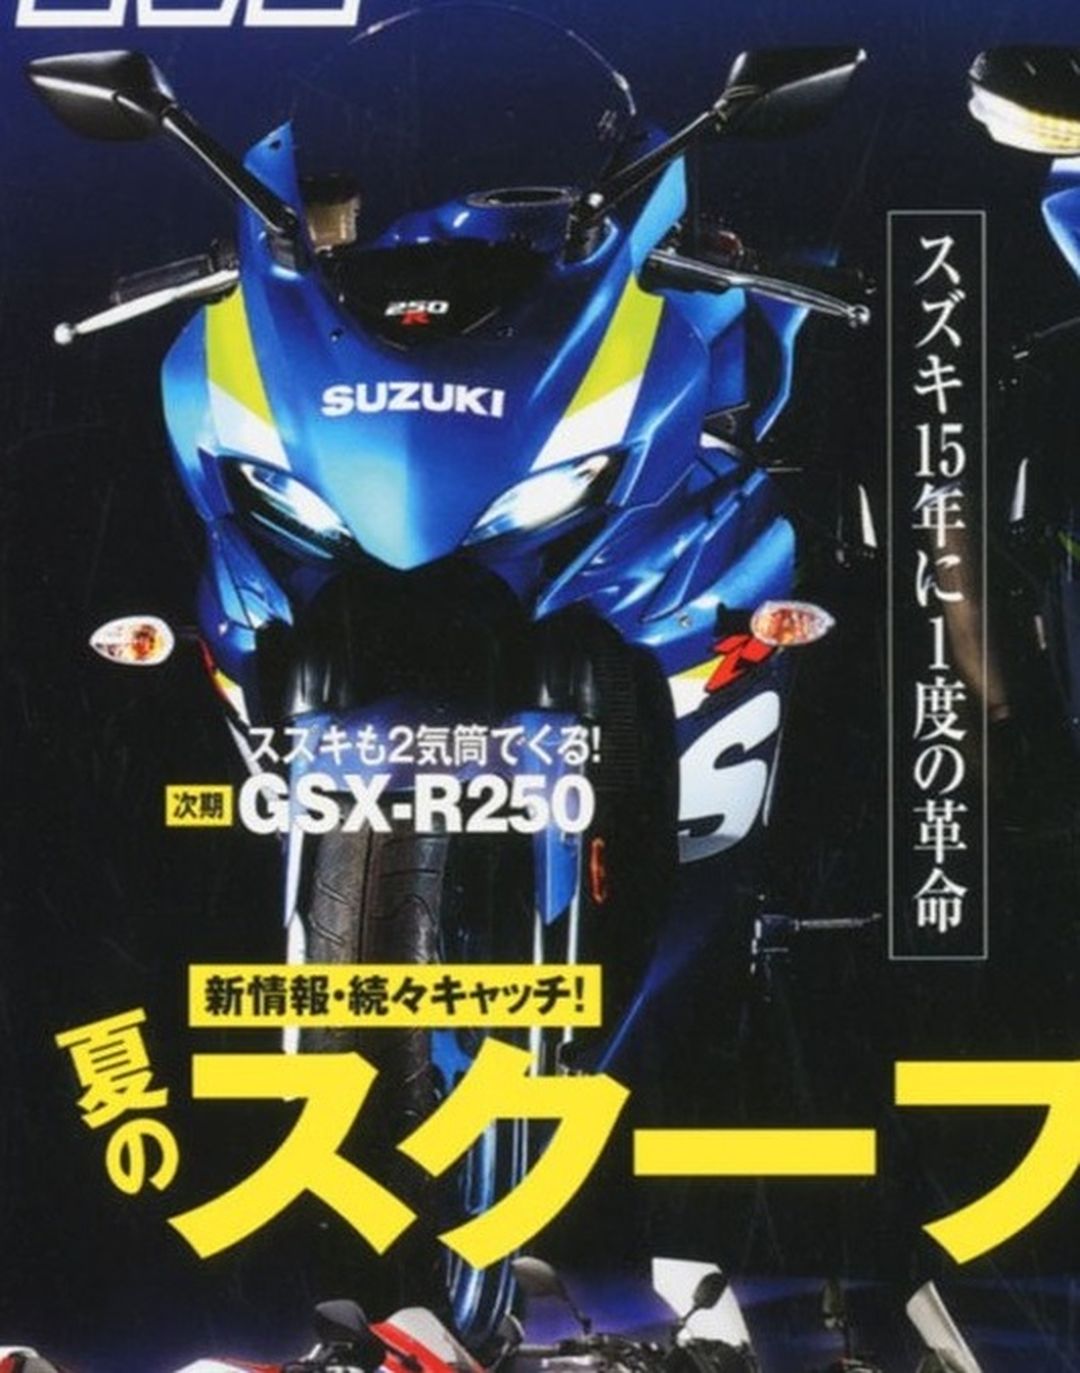 Suzuki GSXR 2016. Frontal.